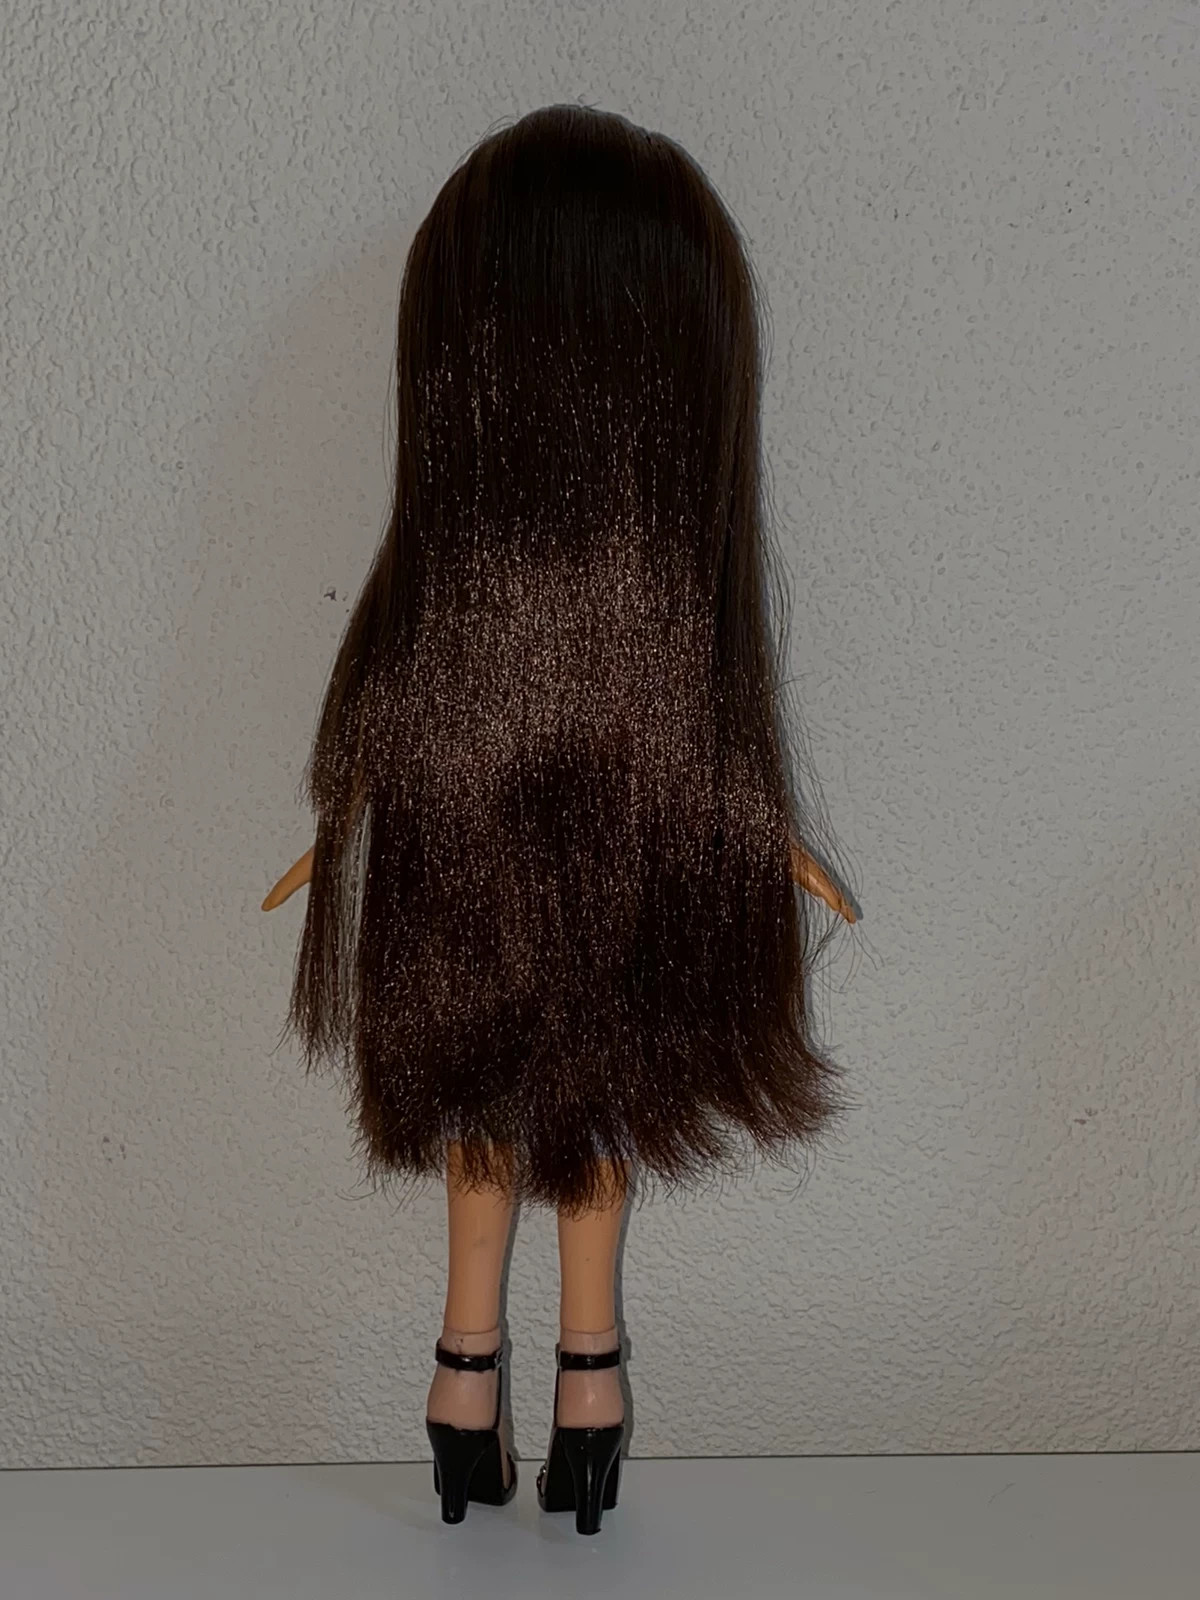 Bratz barbie stylin' salon n spa bundle with Dana doll pop poupee bambola